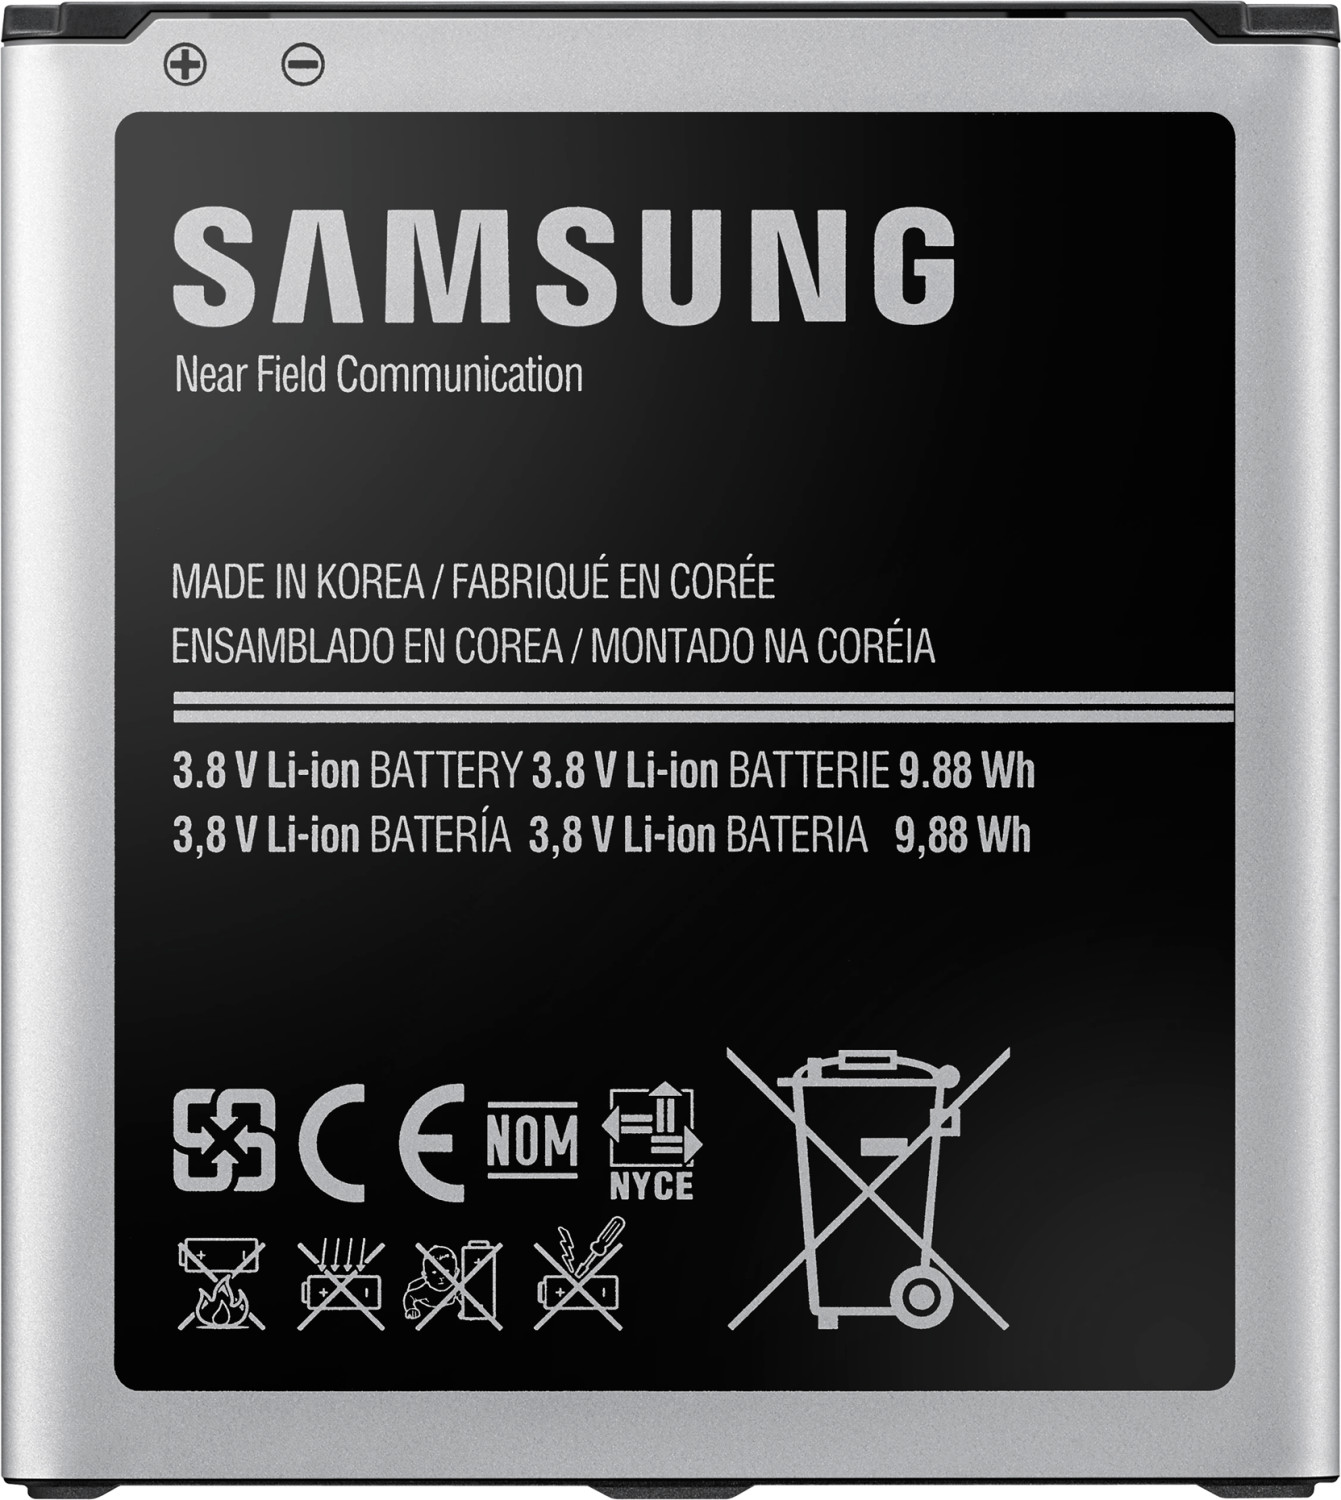 Аккумулятора 4 оригинал. Аккумулятор для Samsung Galaxy s4. Батарейка самсунг j110. Аккумулятор для Samsung b650ac.